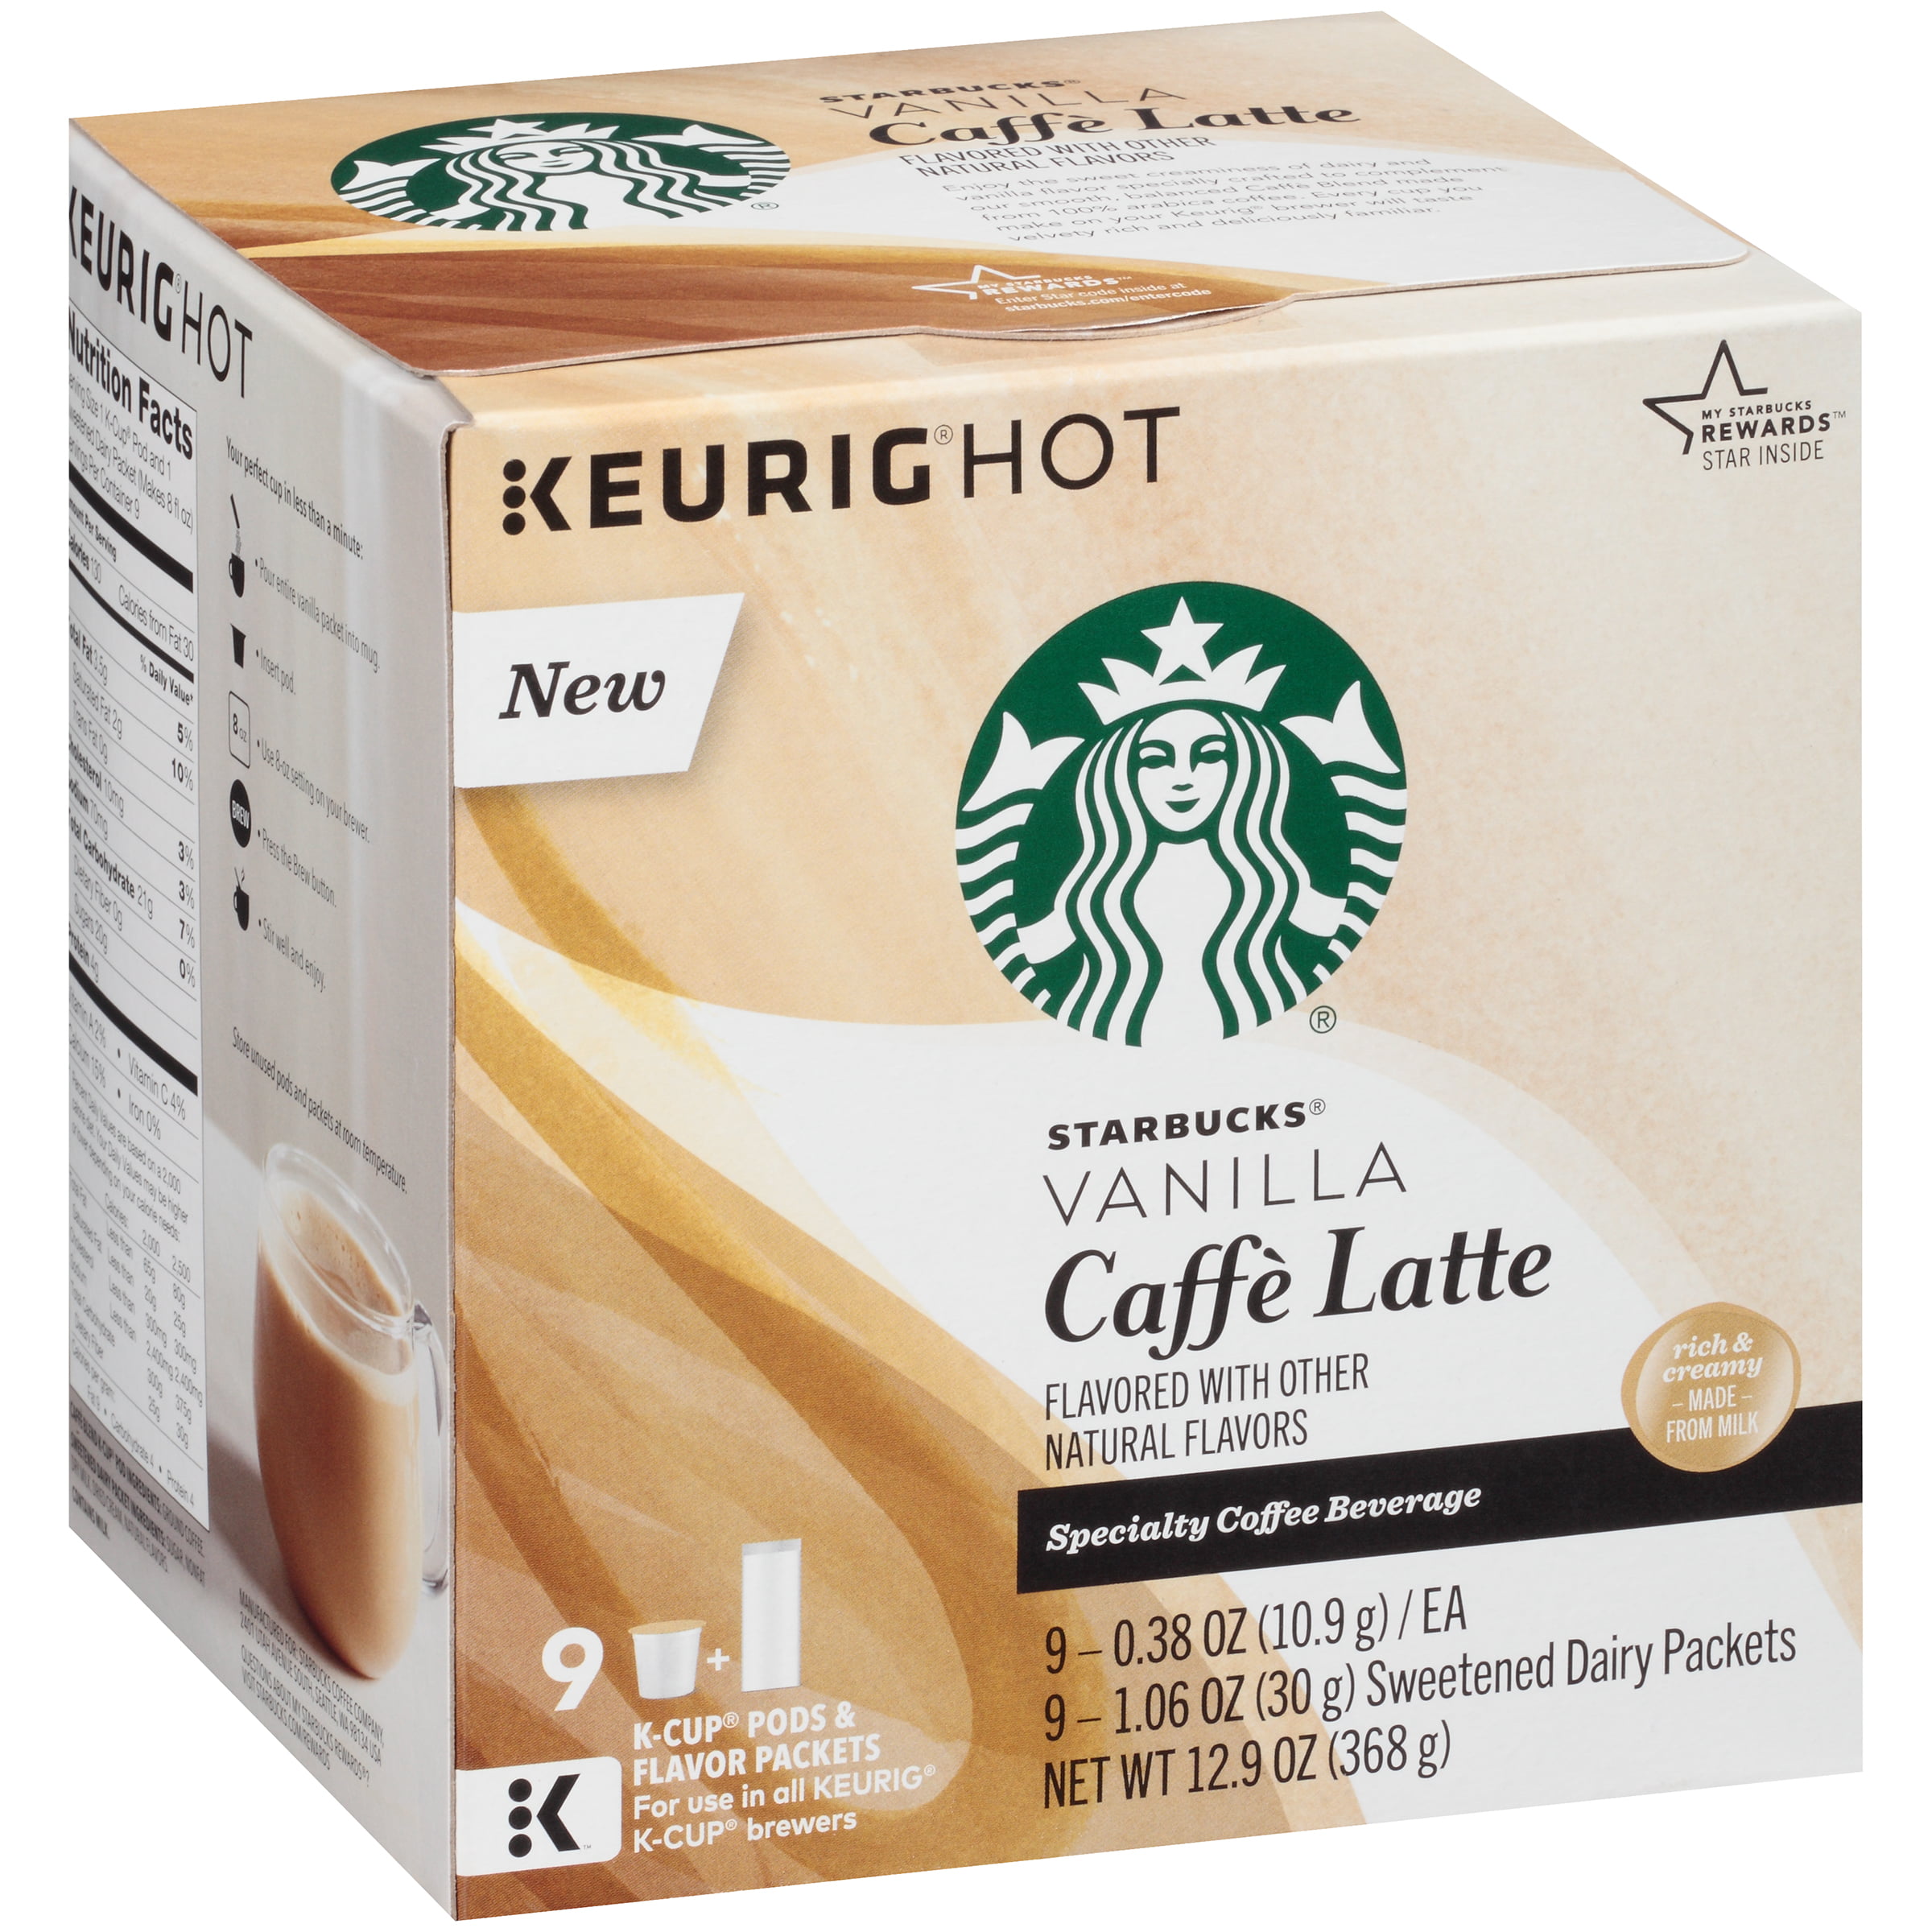 Caramel, K-Cup Starbucks Caffe Latte, Vanilla, K-Cup STARBUCKS Vanill...